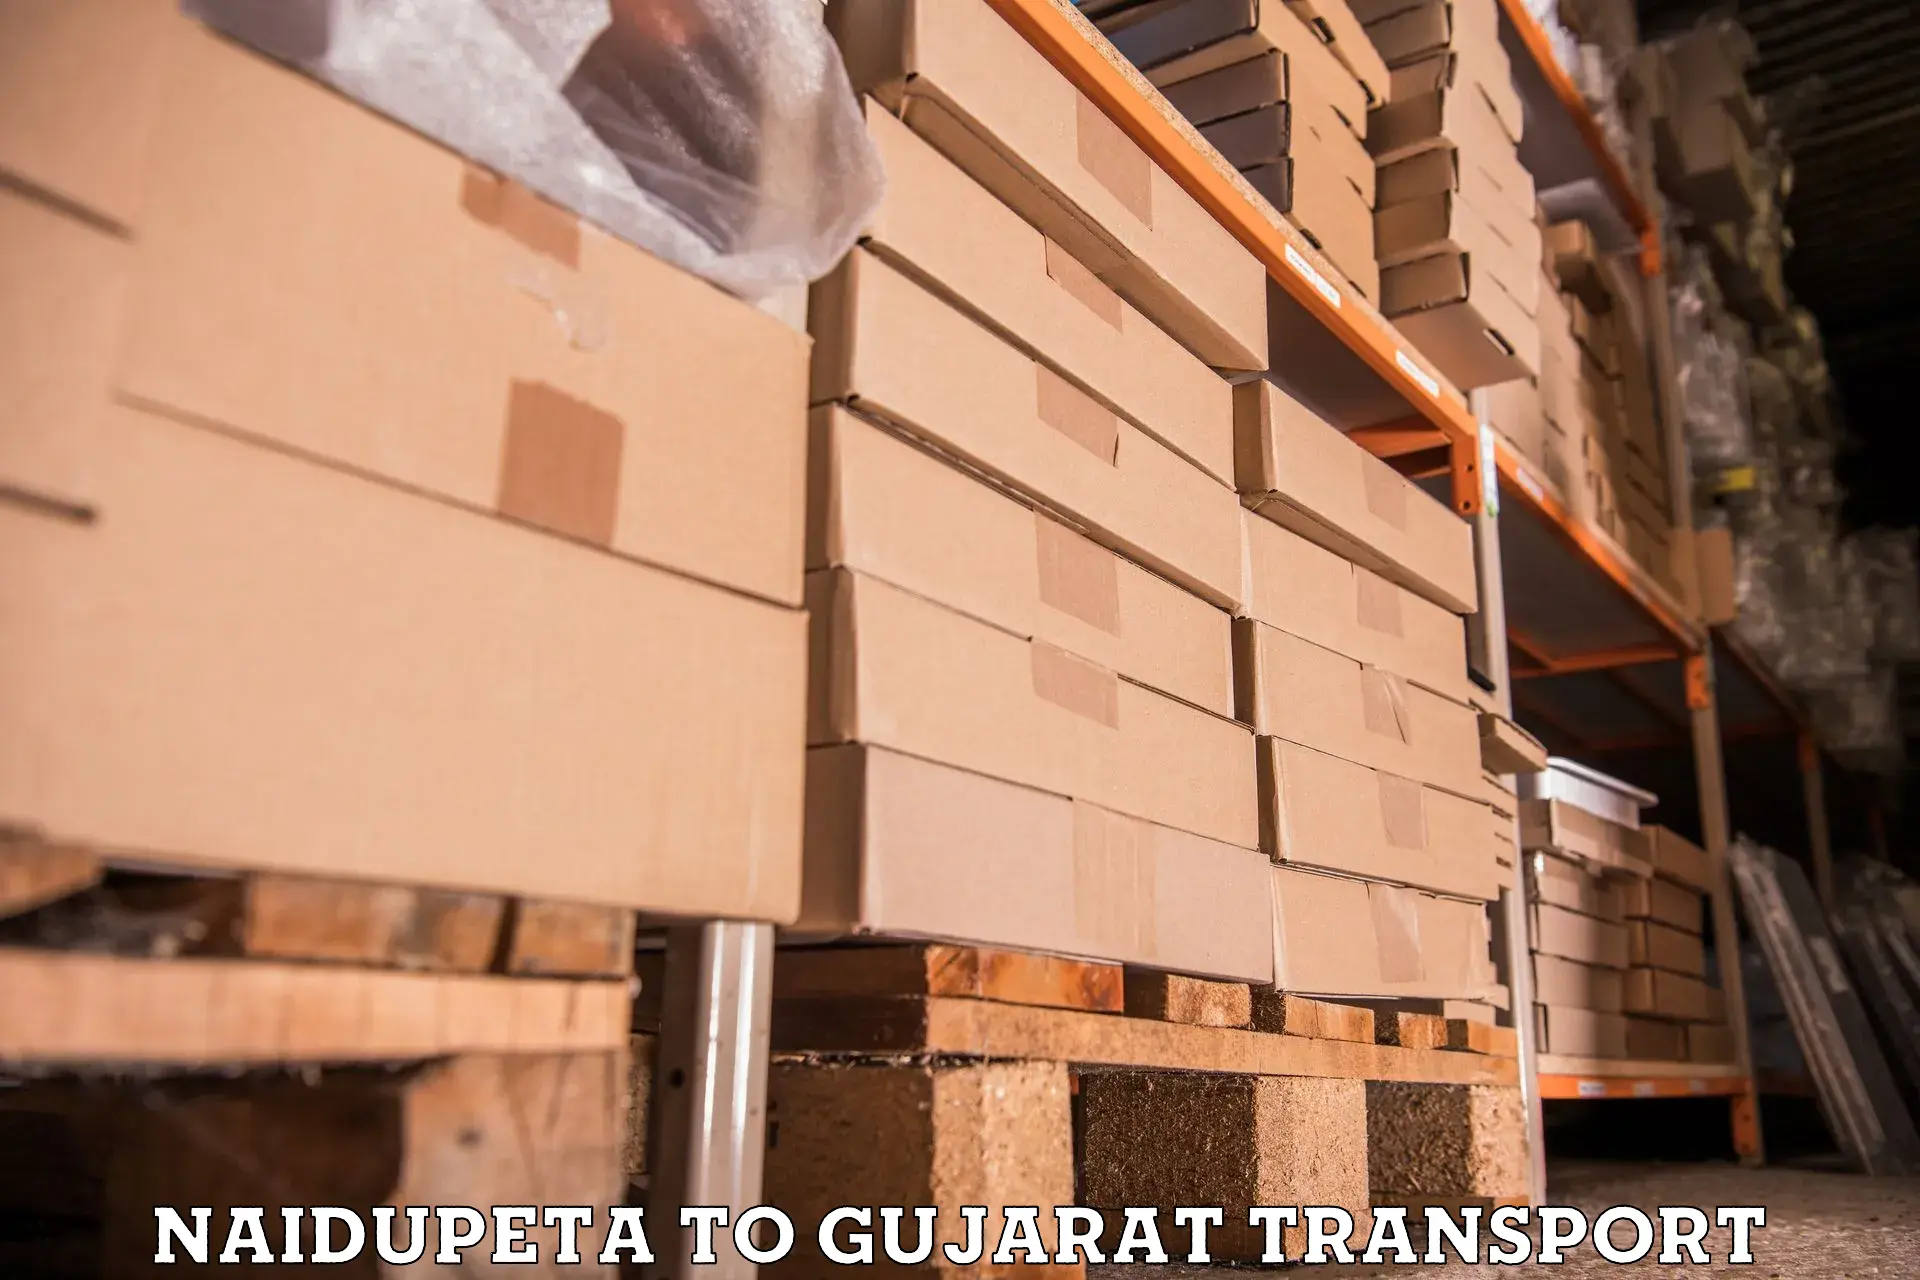 Furniture transport service Naidupeta to Surat